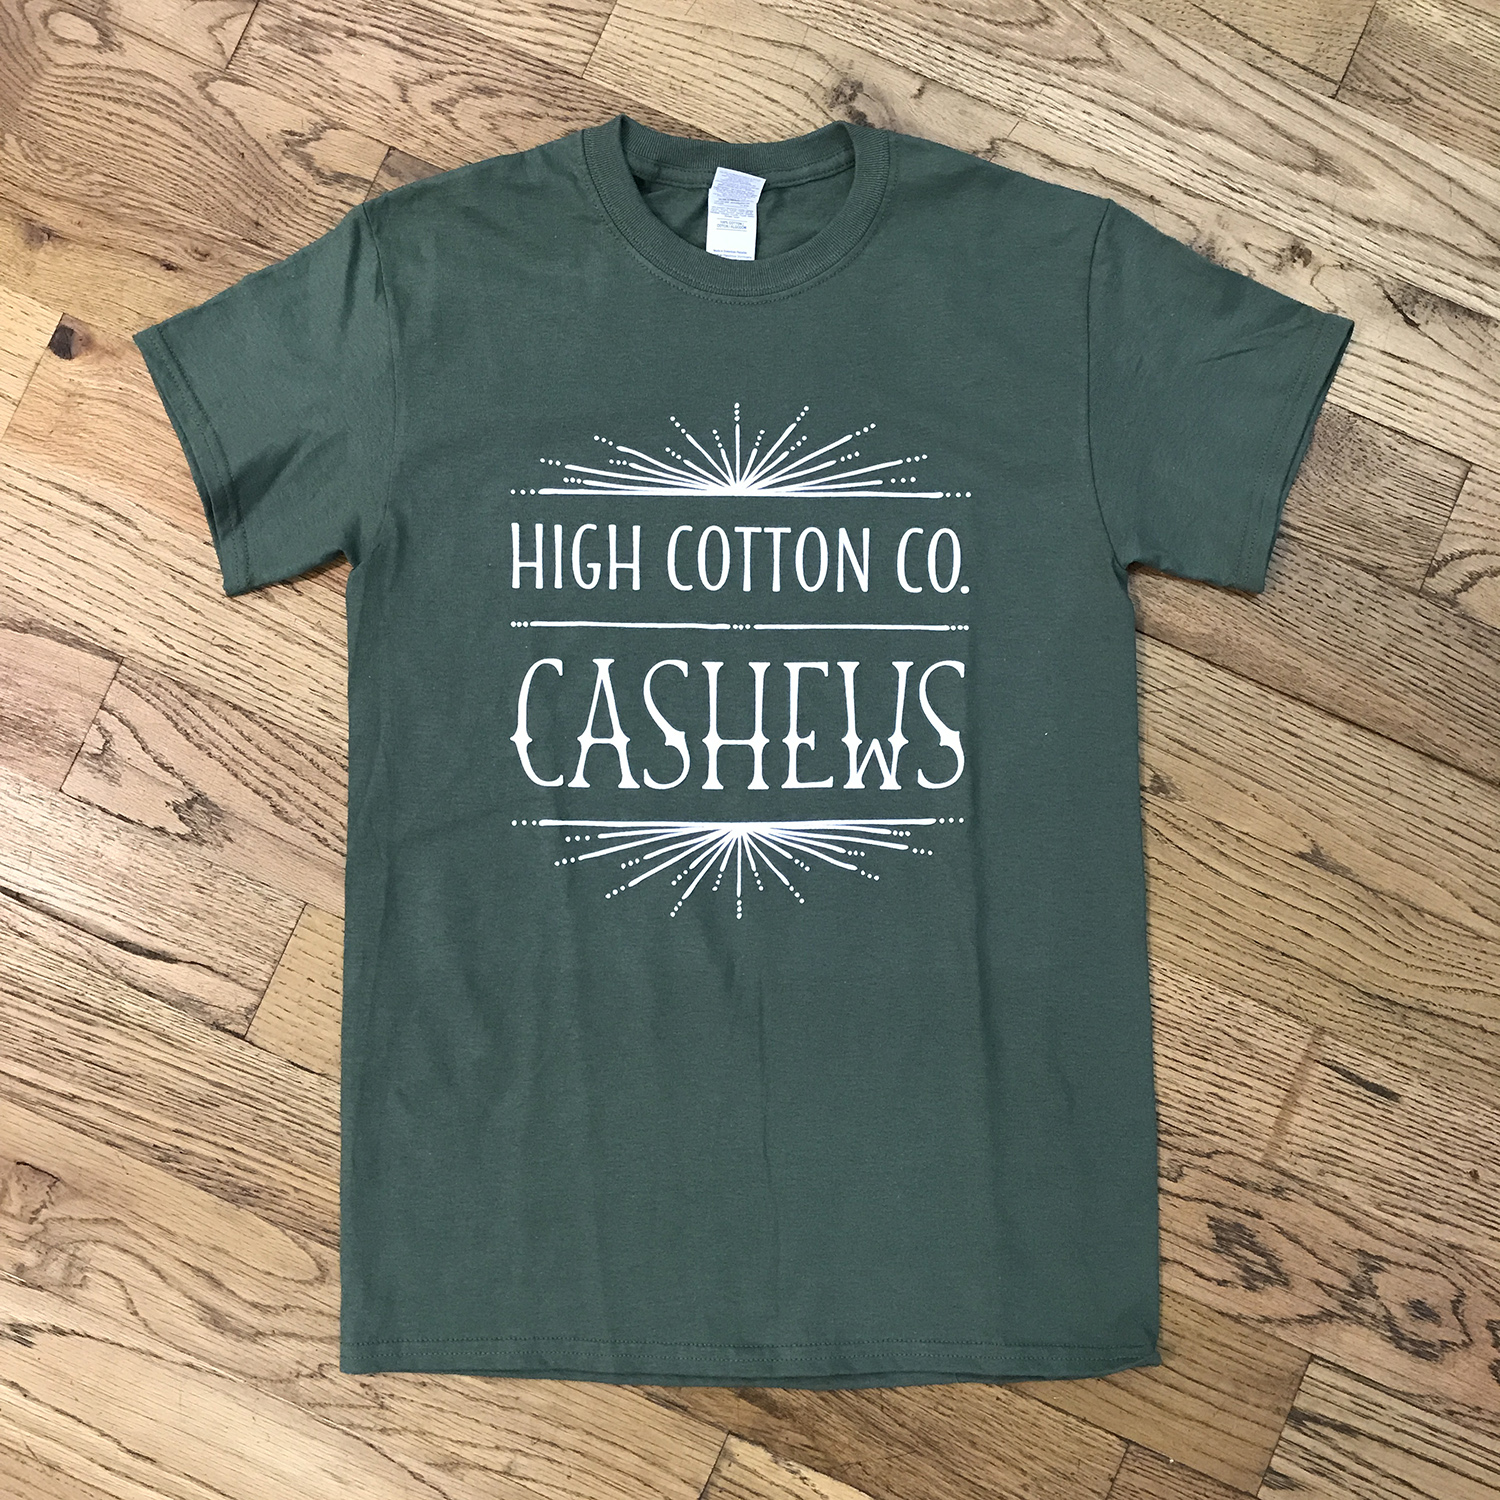 High Cotton Co. Cashews T-shirt Design